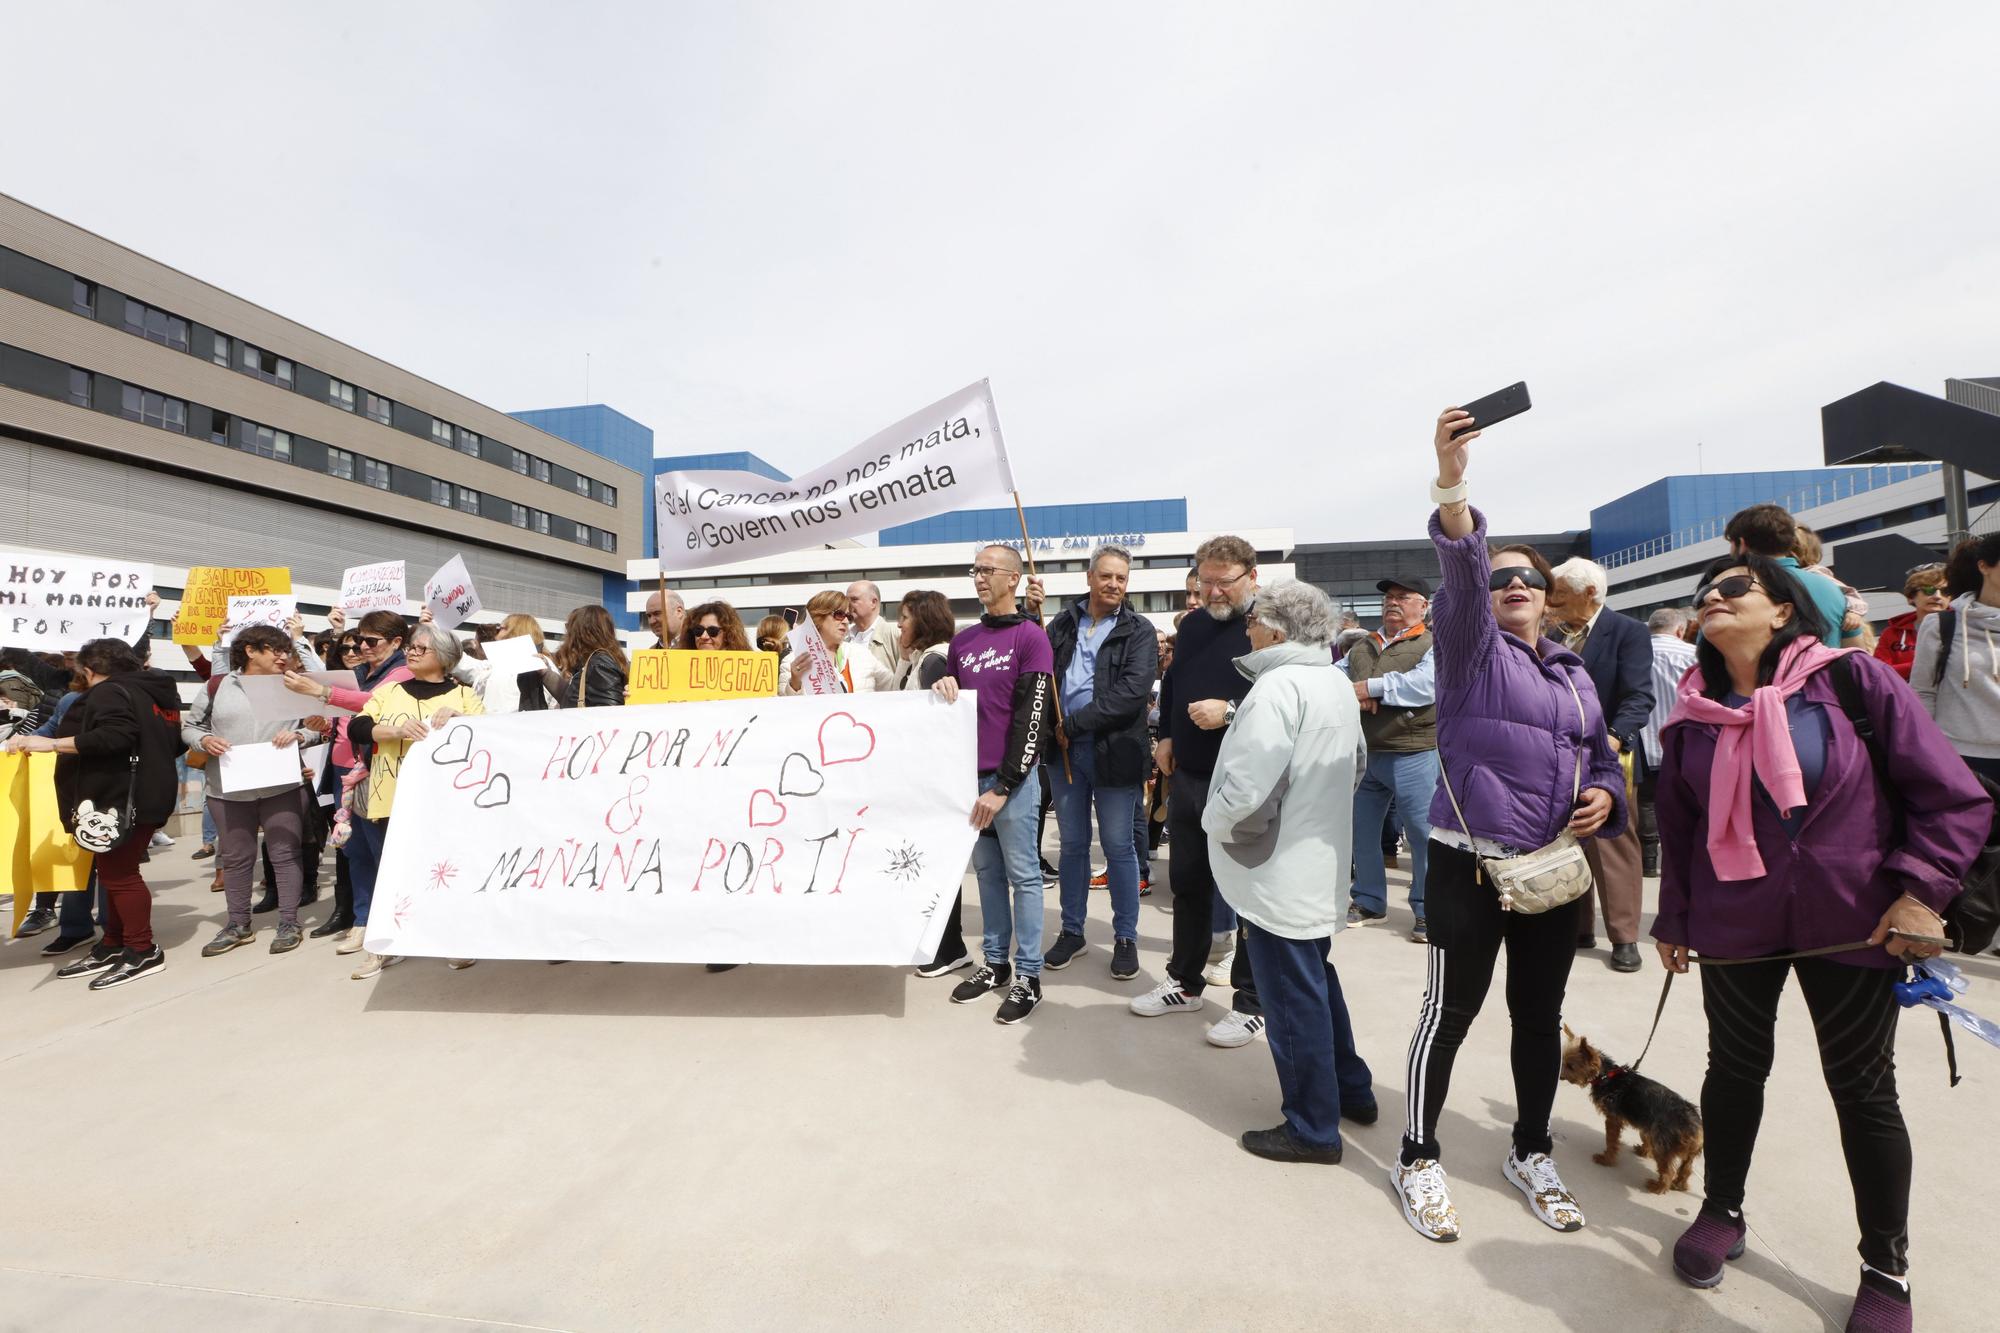 Nueva protesta de los pacientes oncológicos en Ibiza por la falta de médicos: "No vamos a parar"